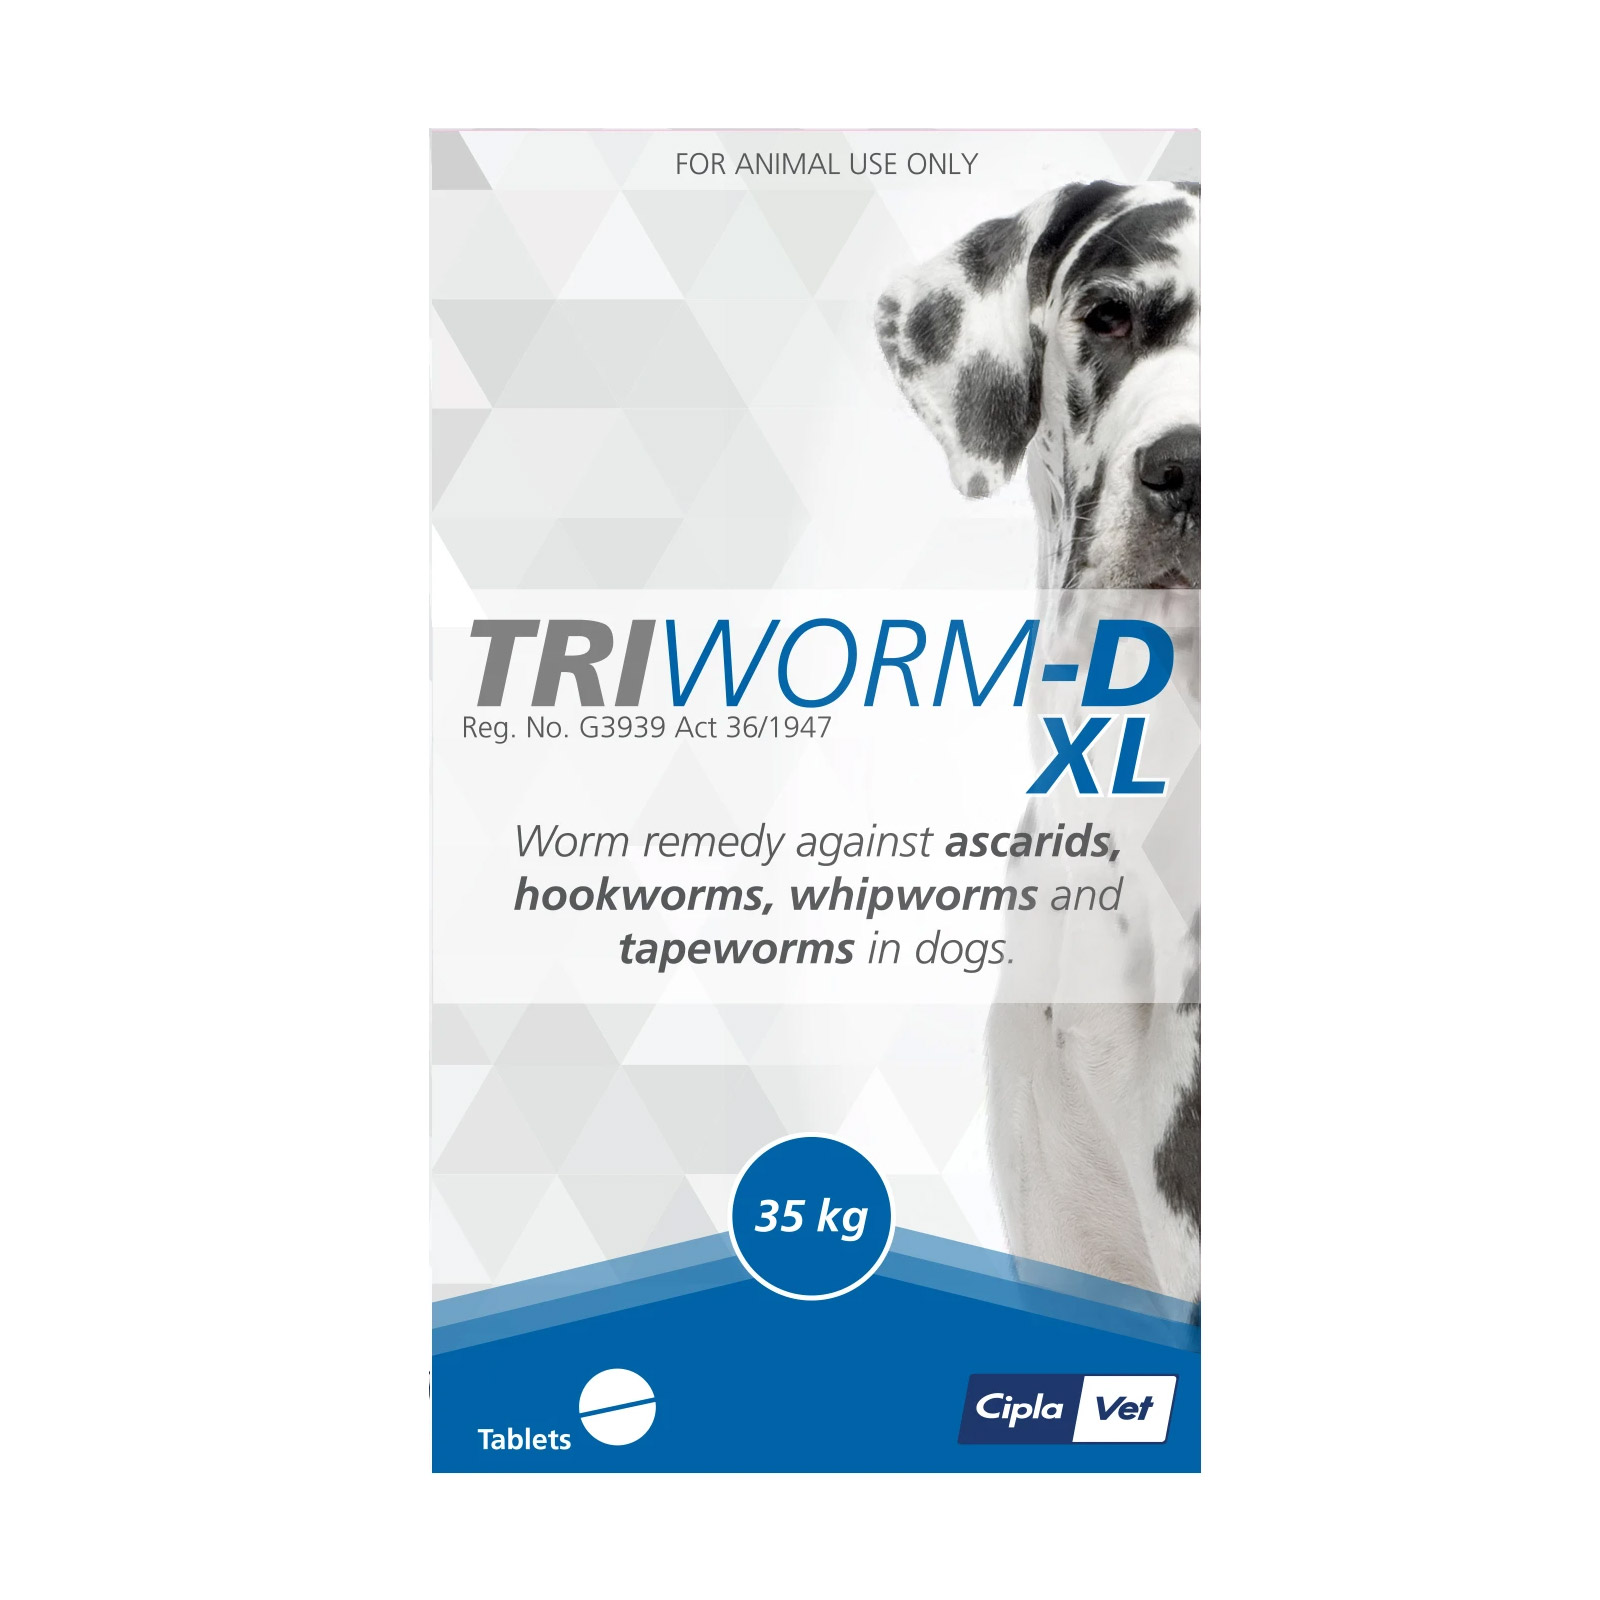 Triworm-D Dewormer For Large Dogs (35kg) 1 Tablet
